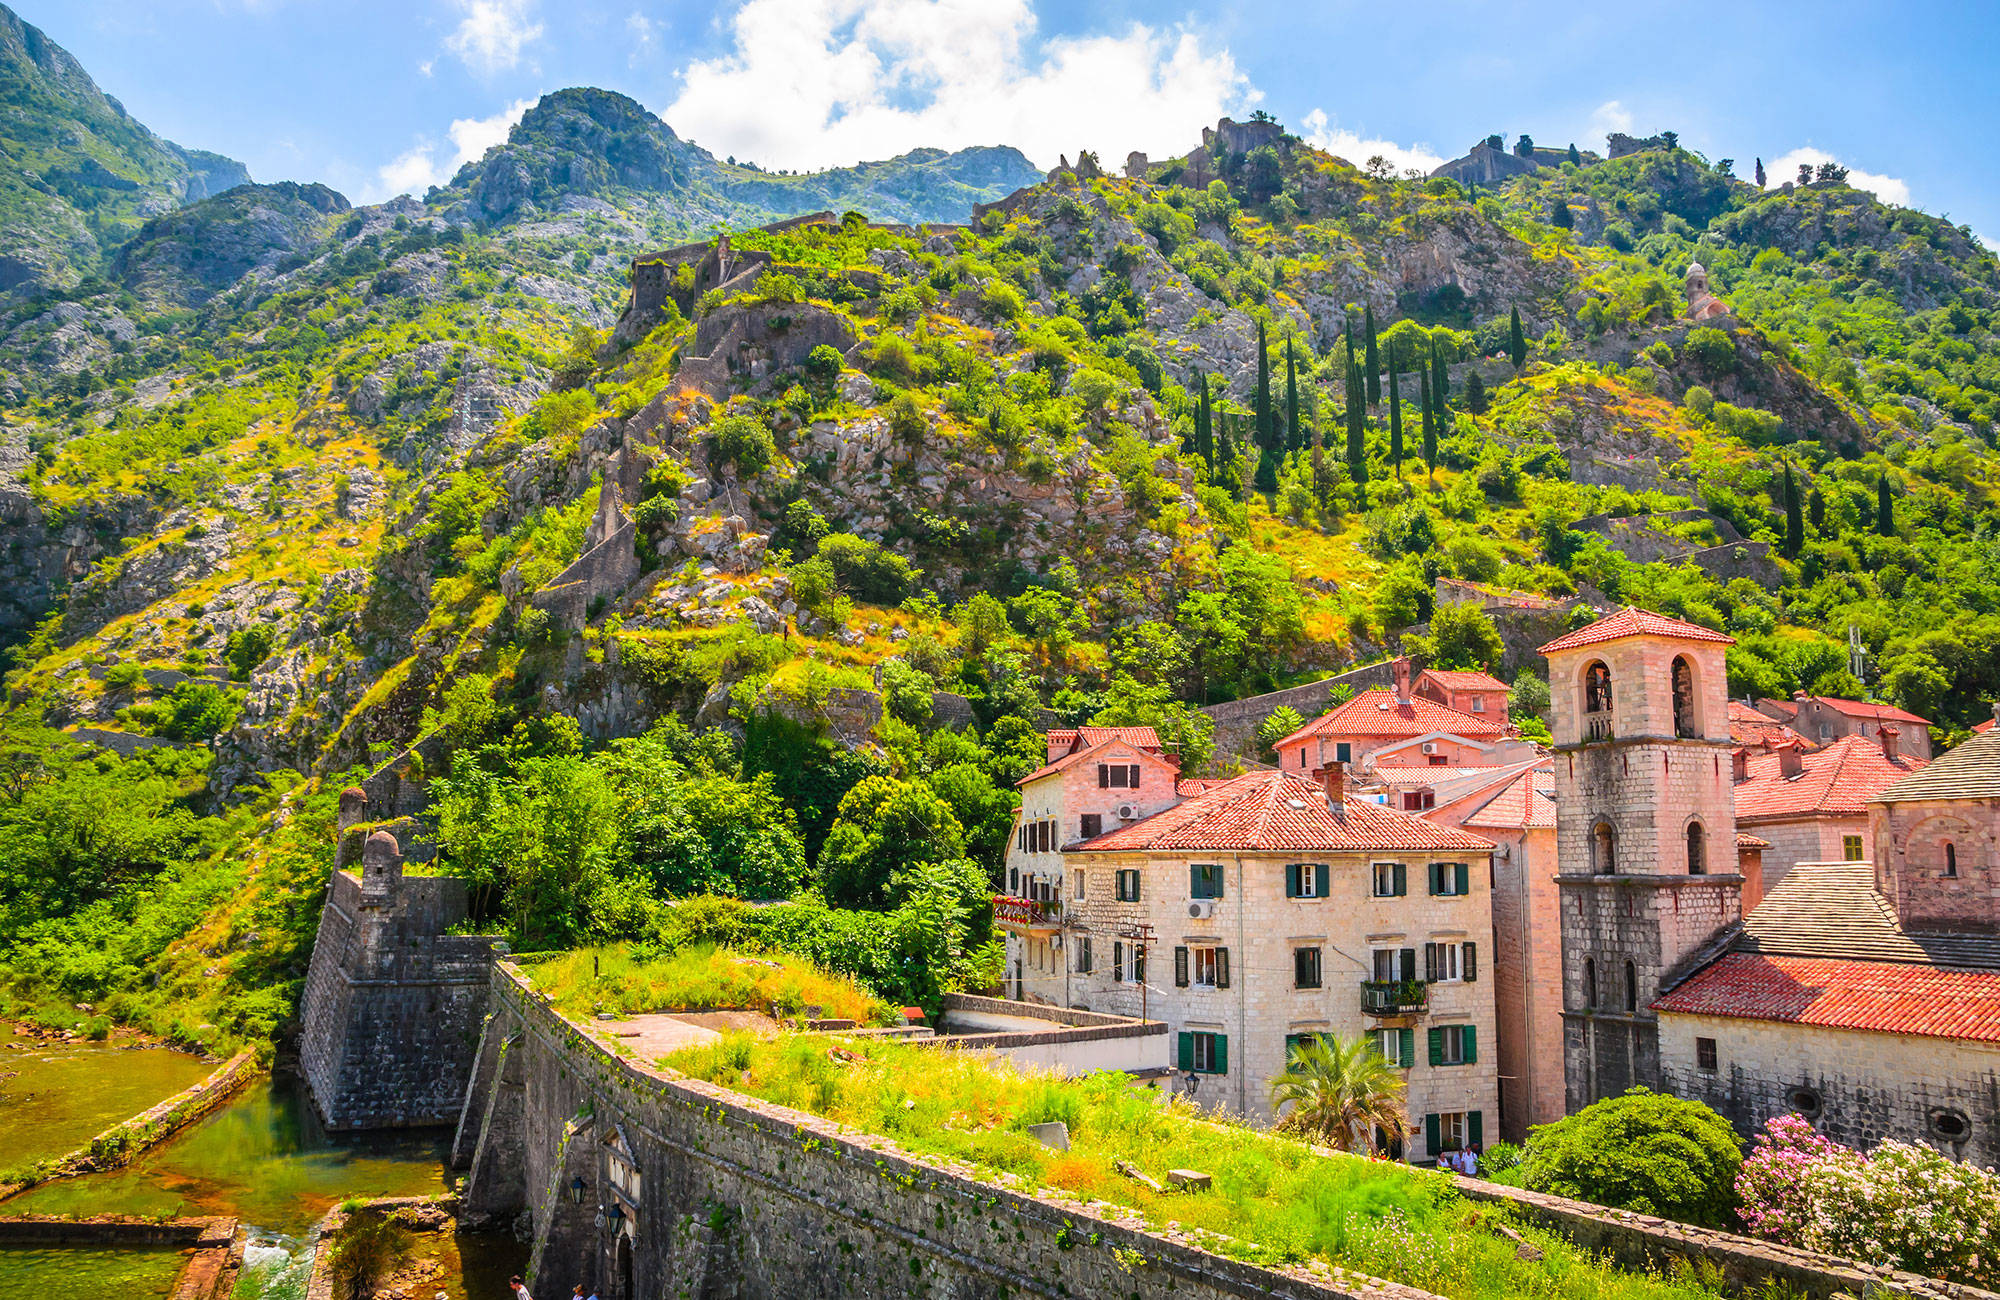 Bergen bij Kotor | Reizen naar Montenegro | KILROY